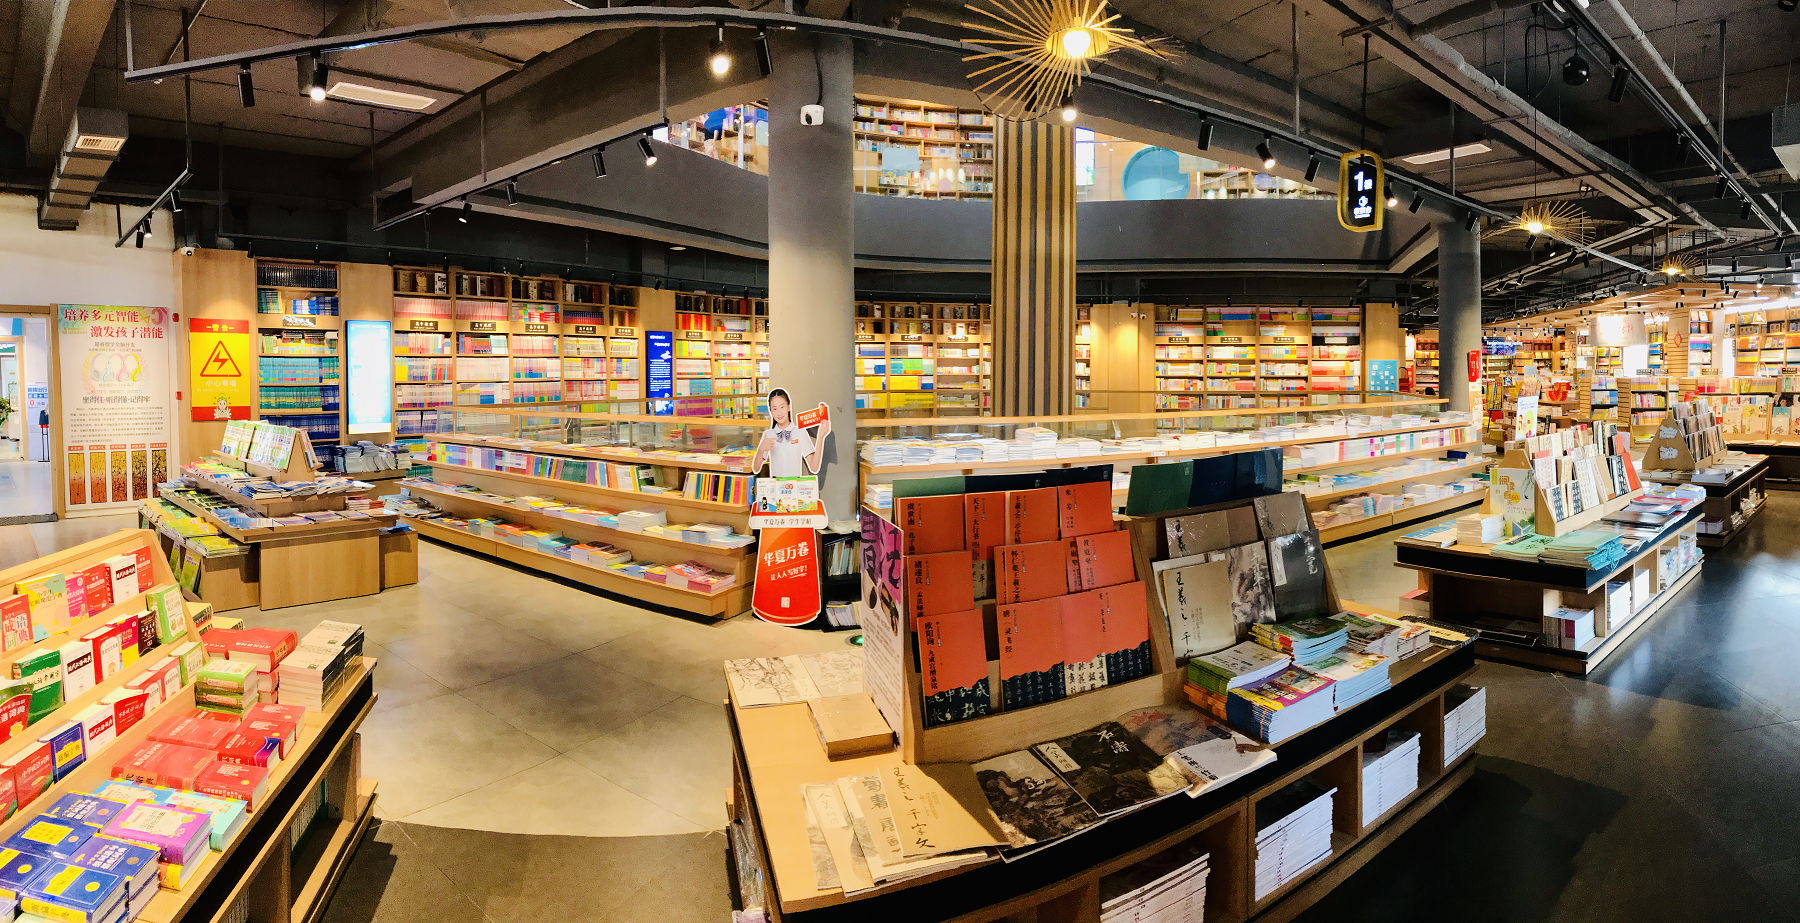 德州解放路新华书店:突出互动体验和文化休闲 倾力打造复合文化空间